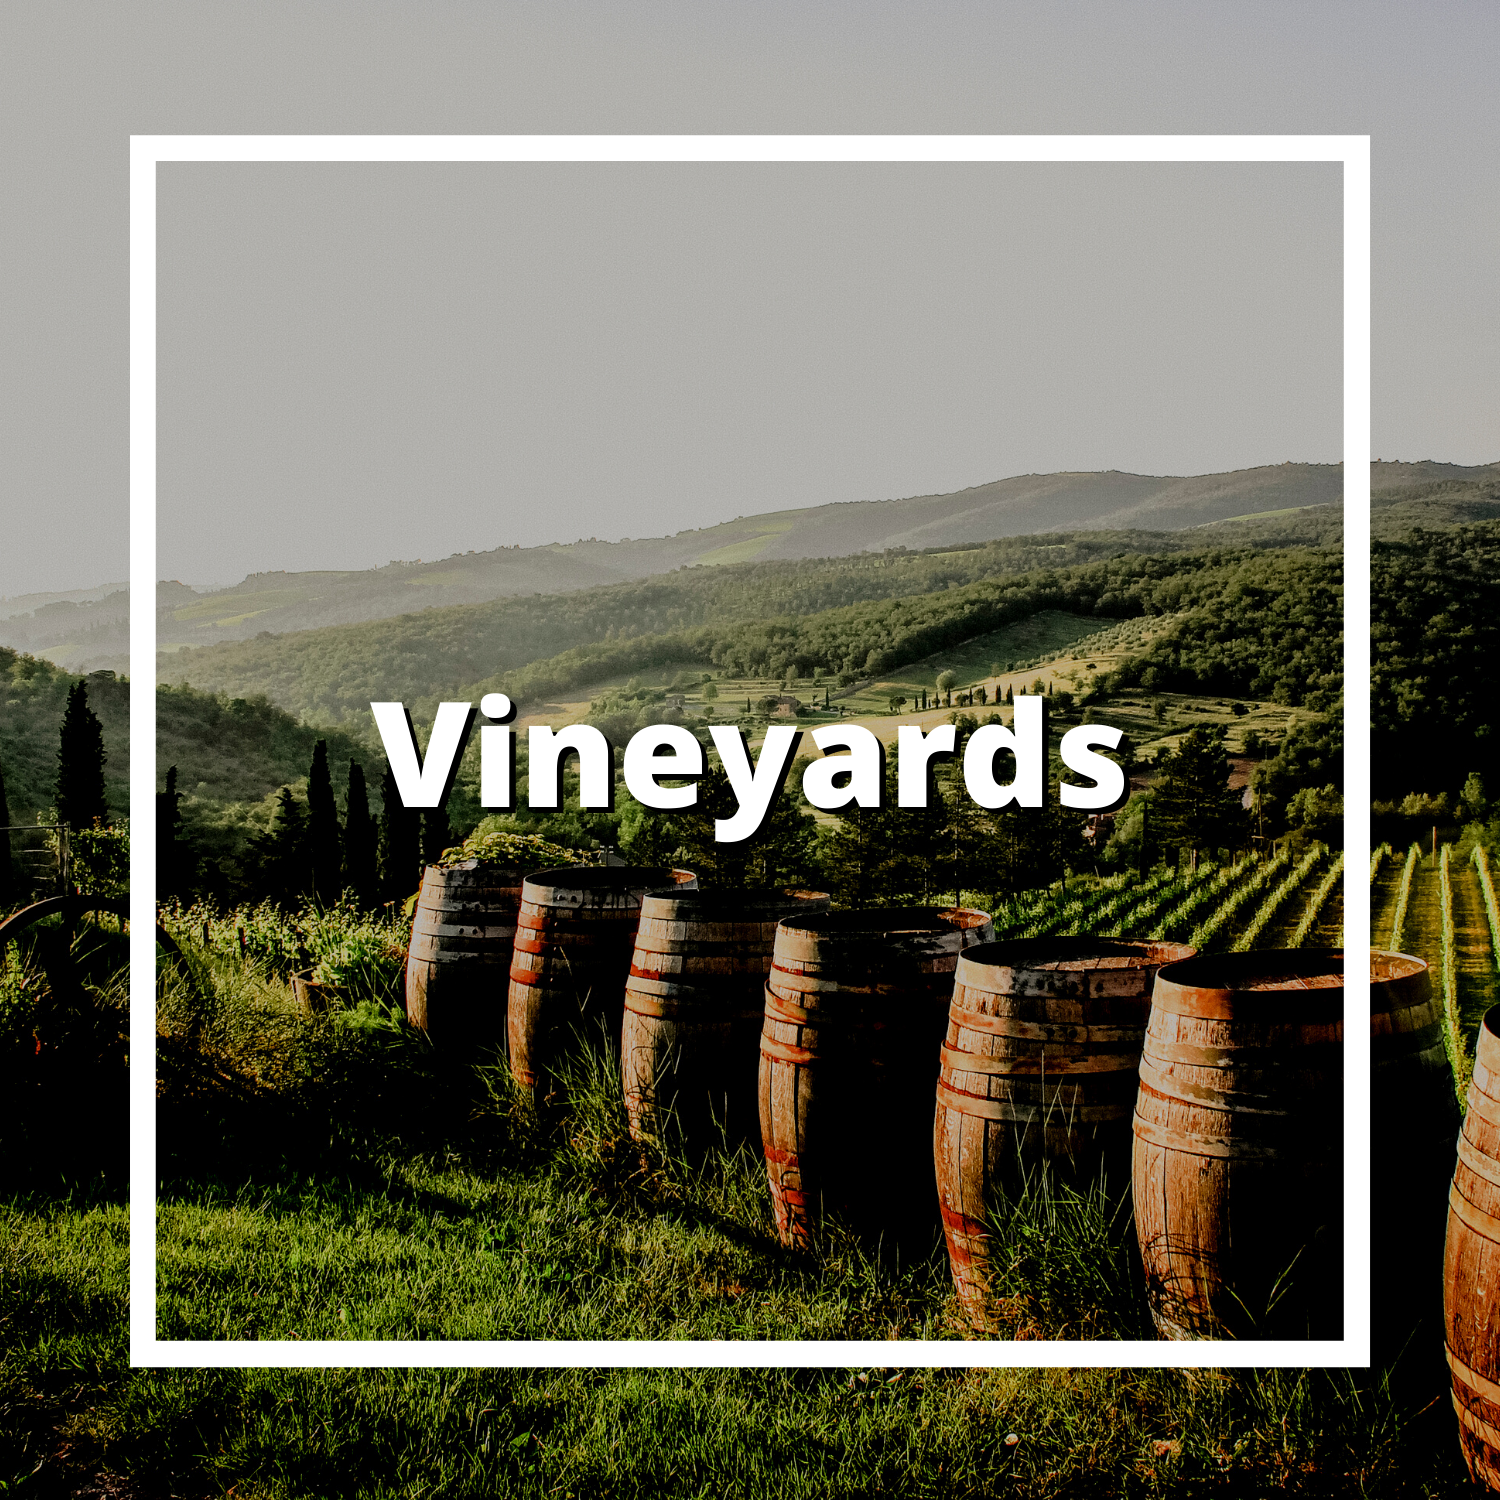 Vineyard, Willamette Valley, Oregon, Wine, Vineyard, Winery, Relax, Leah Hyland, Real Estate Broker